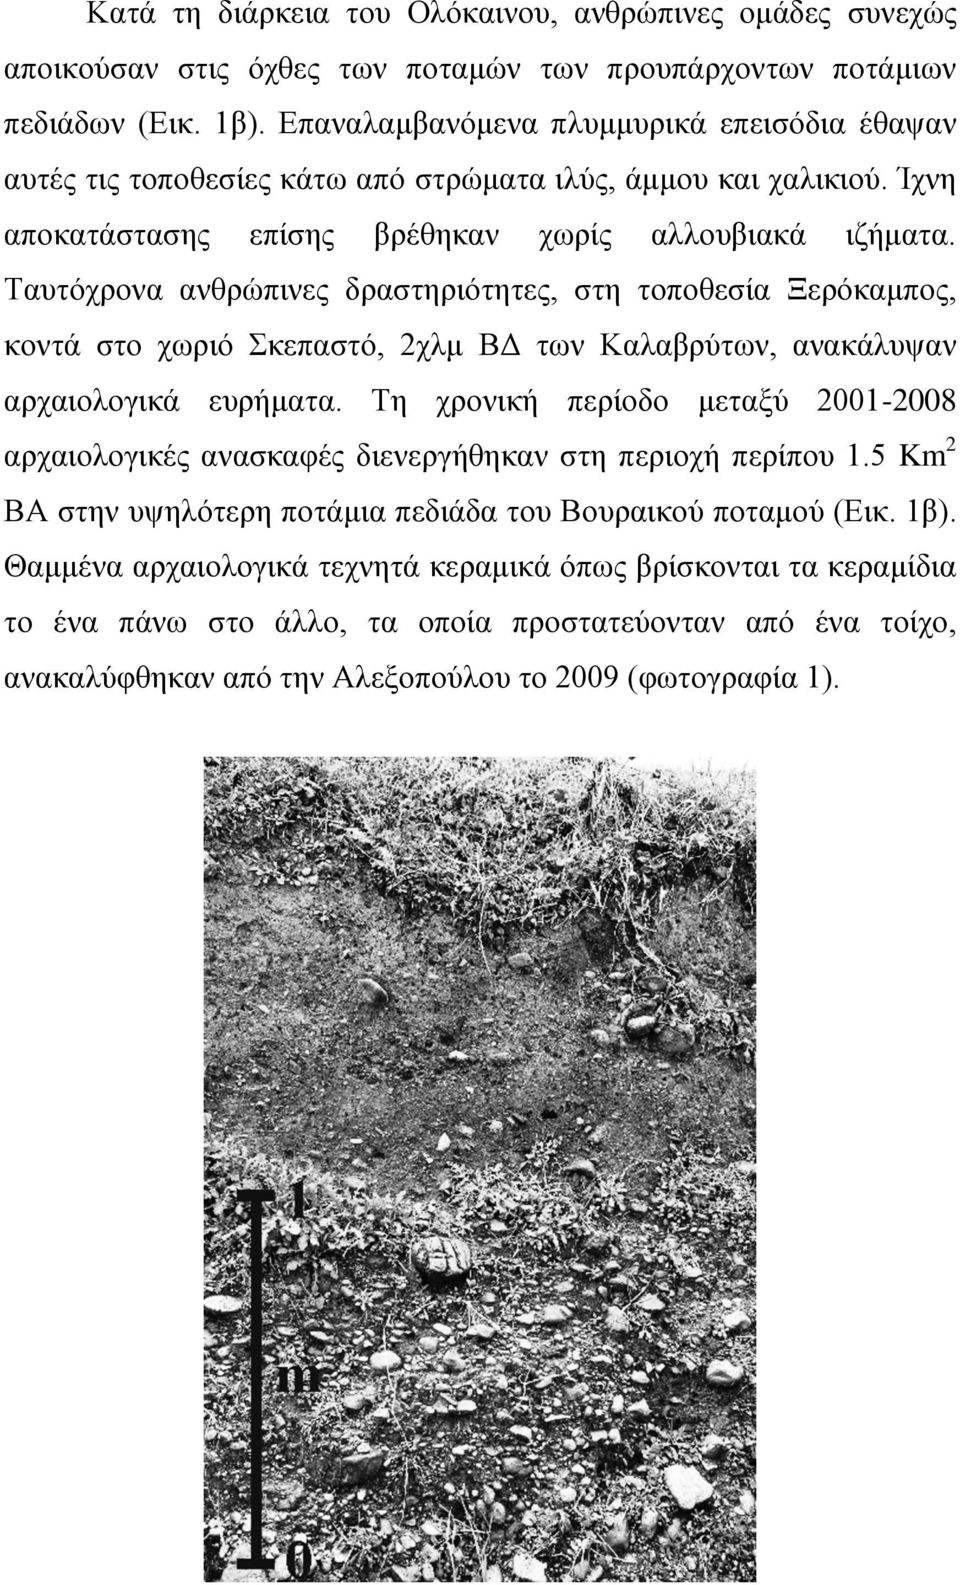 Ταυτόχρονα ανθρώπινες δραστηριότητες, στη τοποθεσία Ξερόκαμπος, κοντά στο χωριό Σκεπαστό, 2χλμ ΒΔ των Καλαβρύτων, ανακάλυψαν αρχαιολογικά ευρήματα.